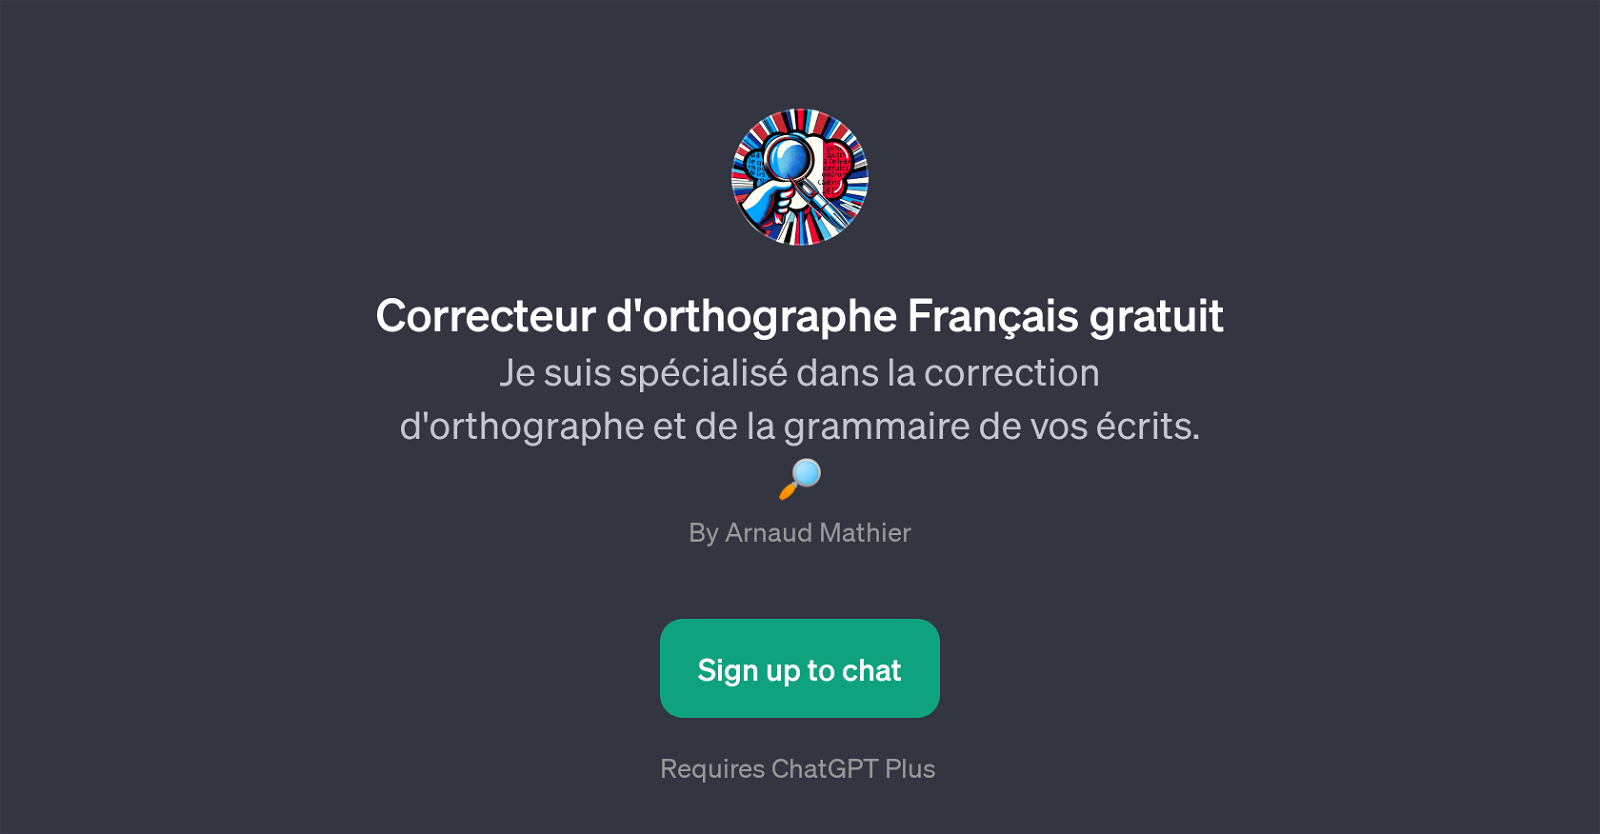 Correcteur d'orthographe Franais gratuit website